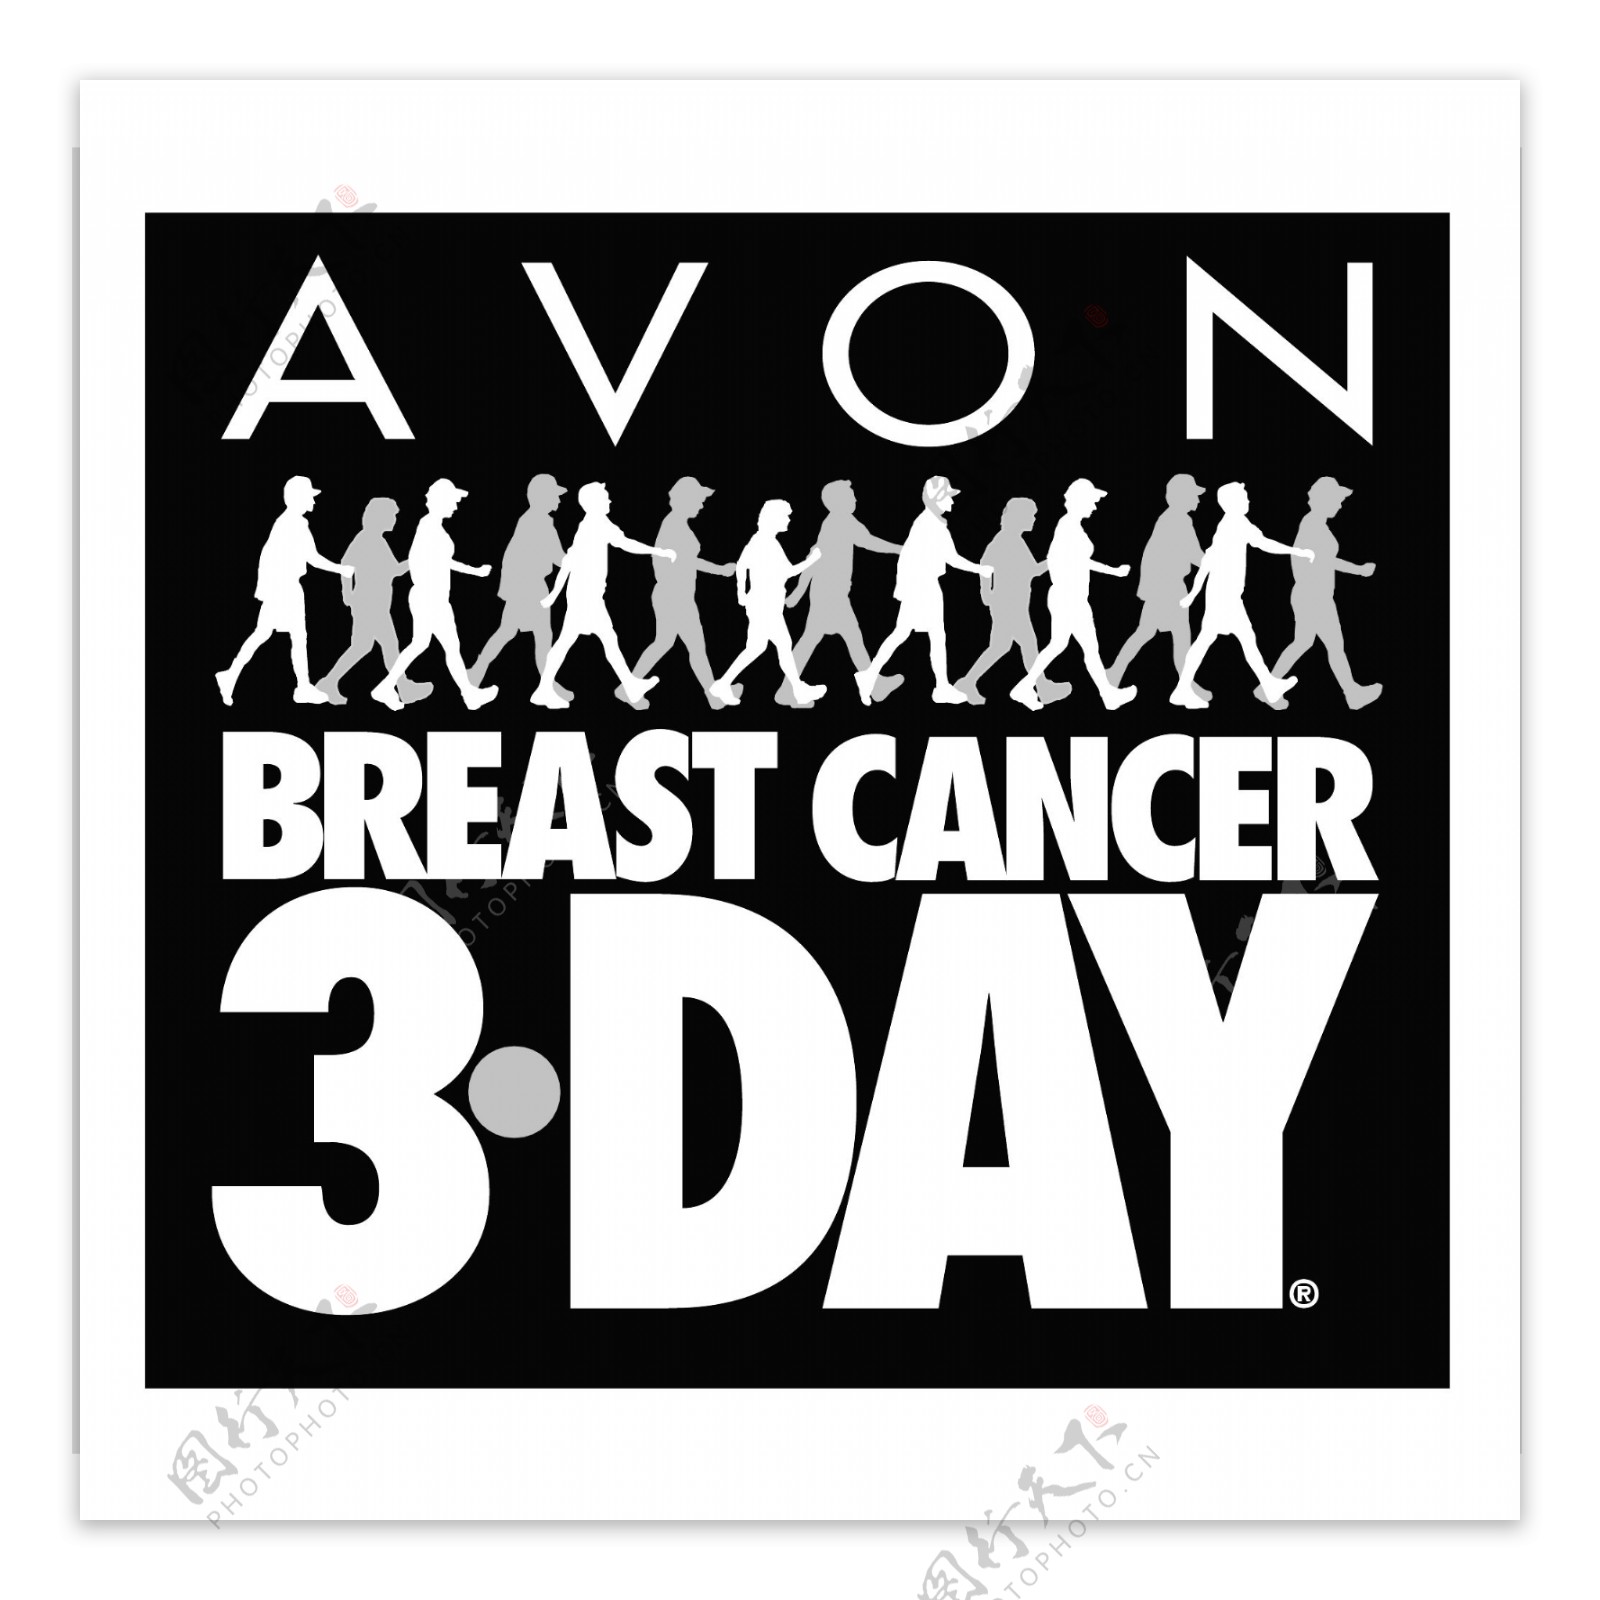 雅芳乳腺癌3天